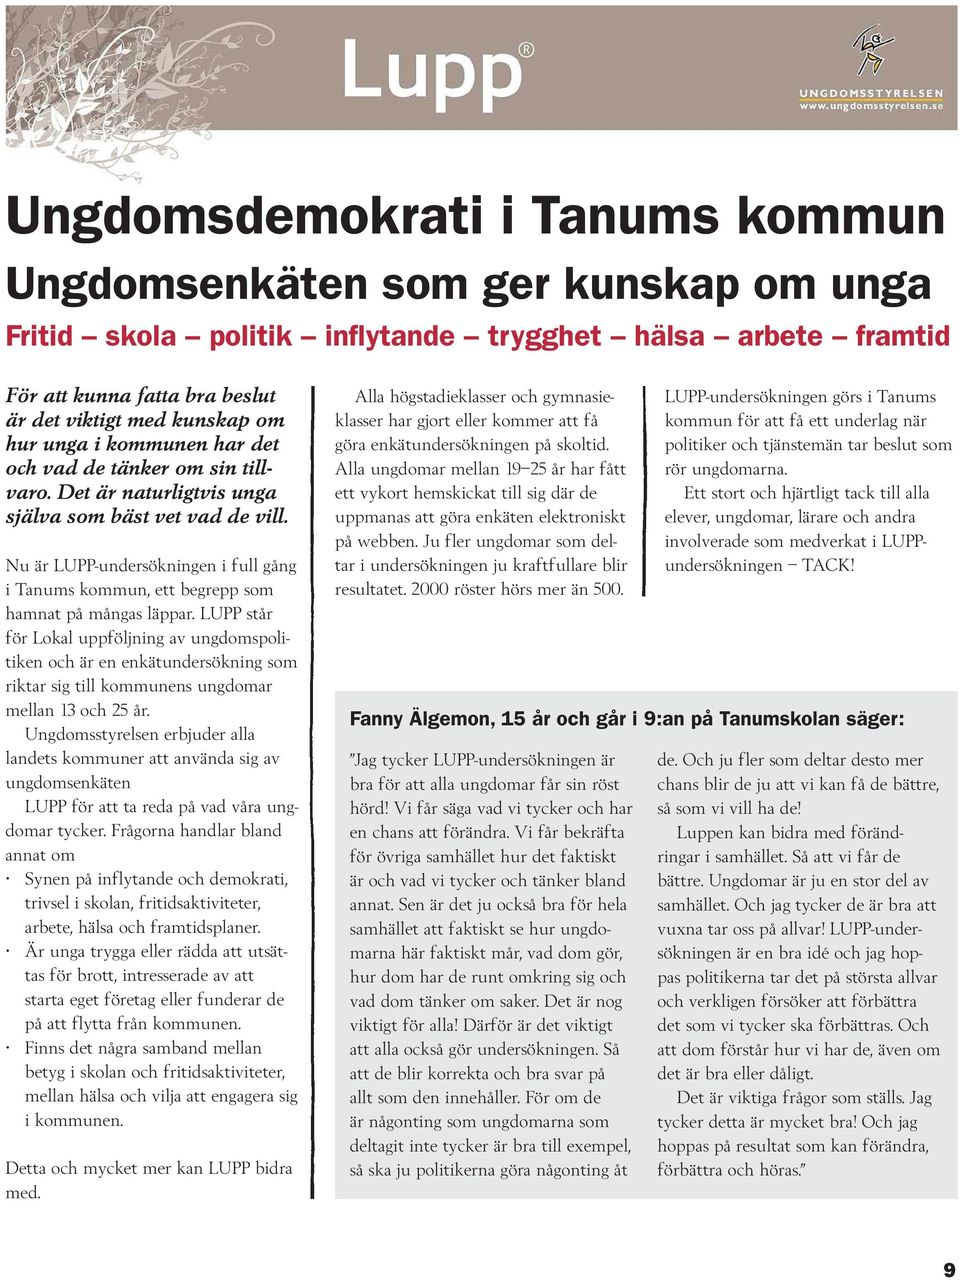 Nu är LUPP-undersökningen i full gång i Tanums kommun, ett begrepp som hamnat på mångas läppar.